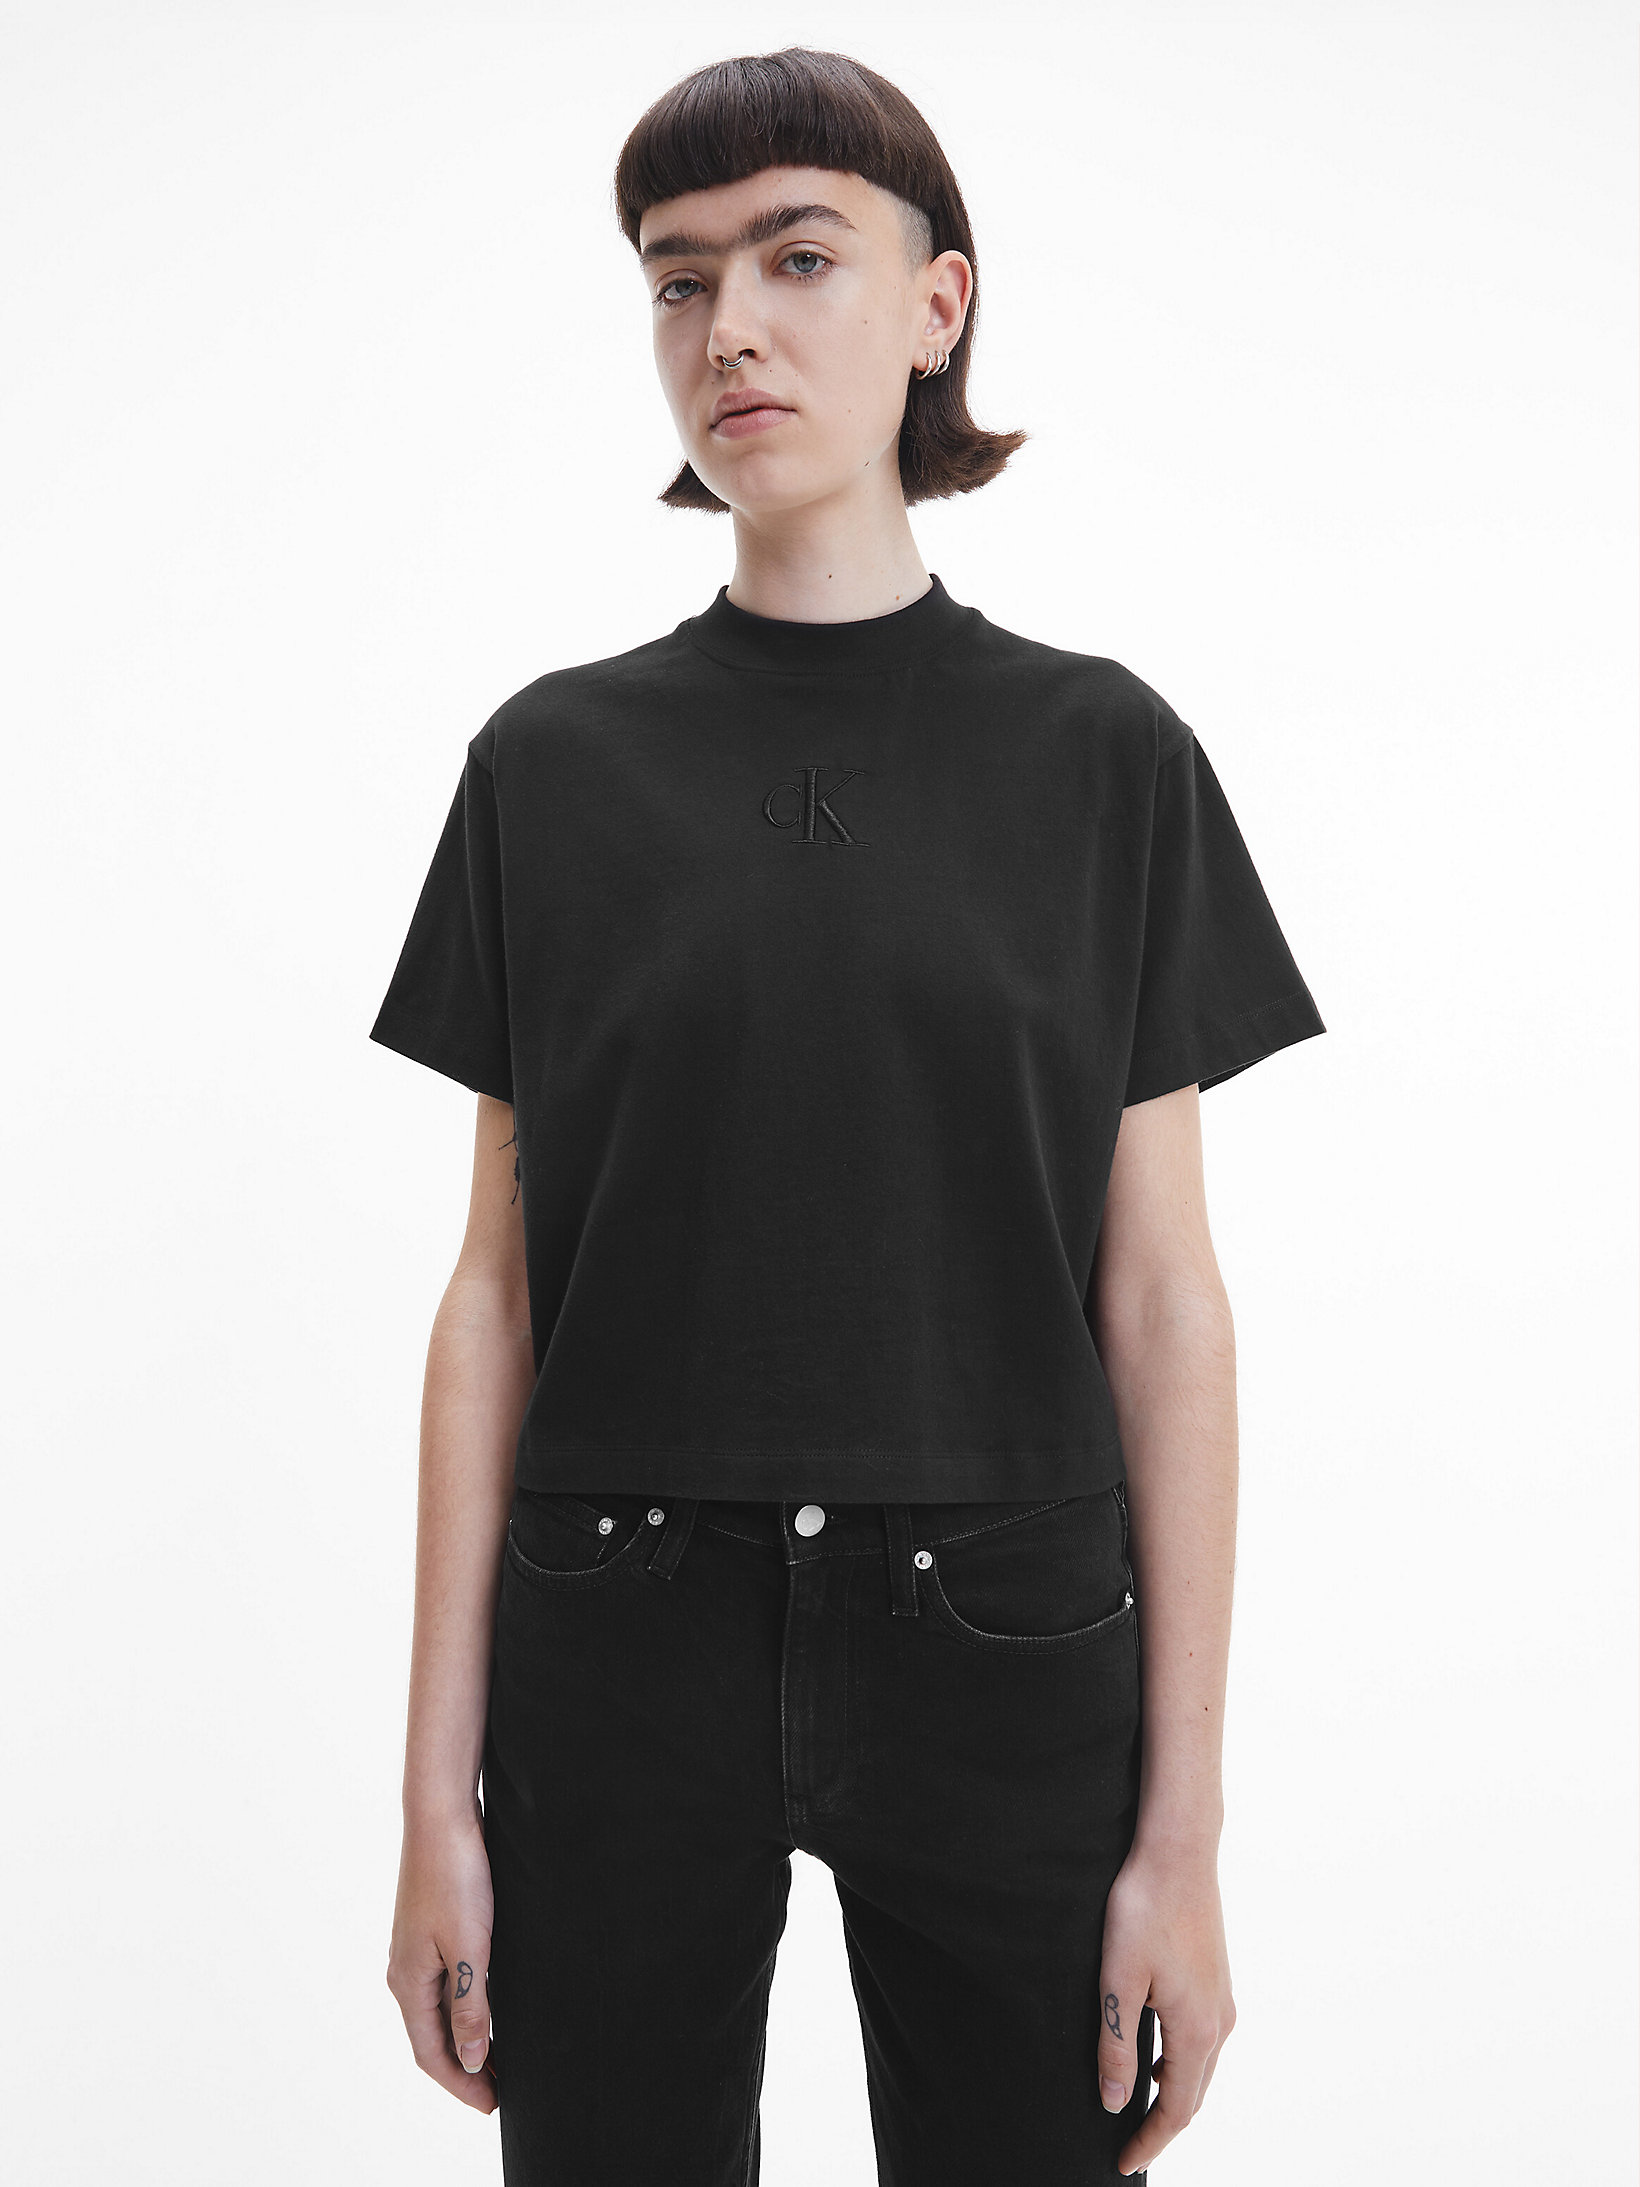 CK Black Relaxed T-Shirt undefined women Calvin Klein